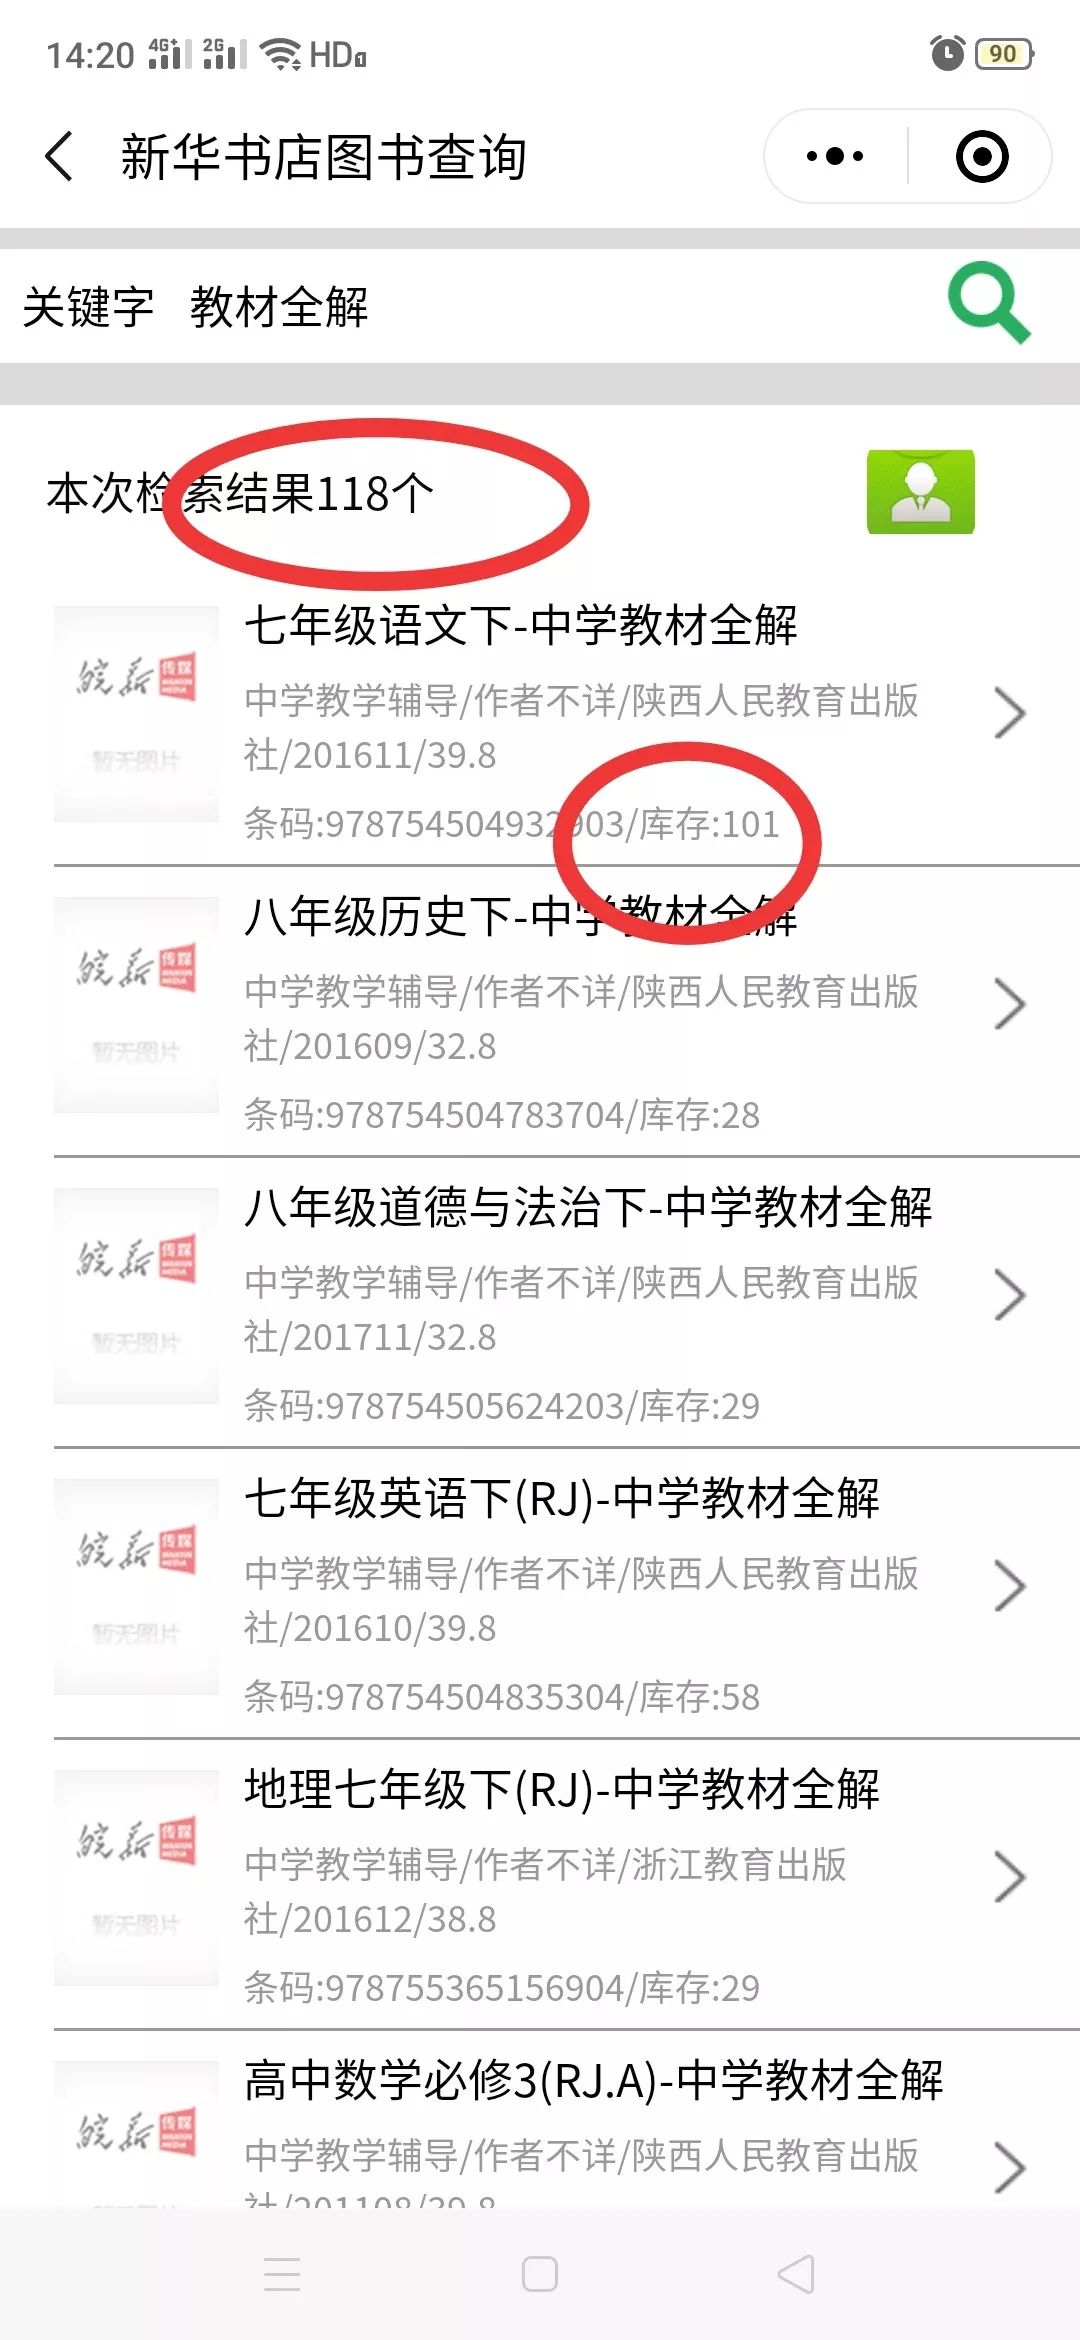 潜山新华书店微信订购服务正式启动 附图书查询流程